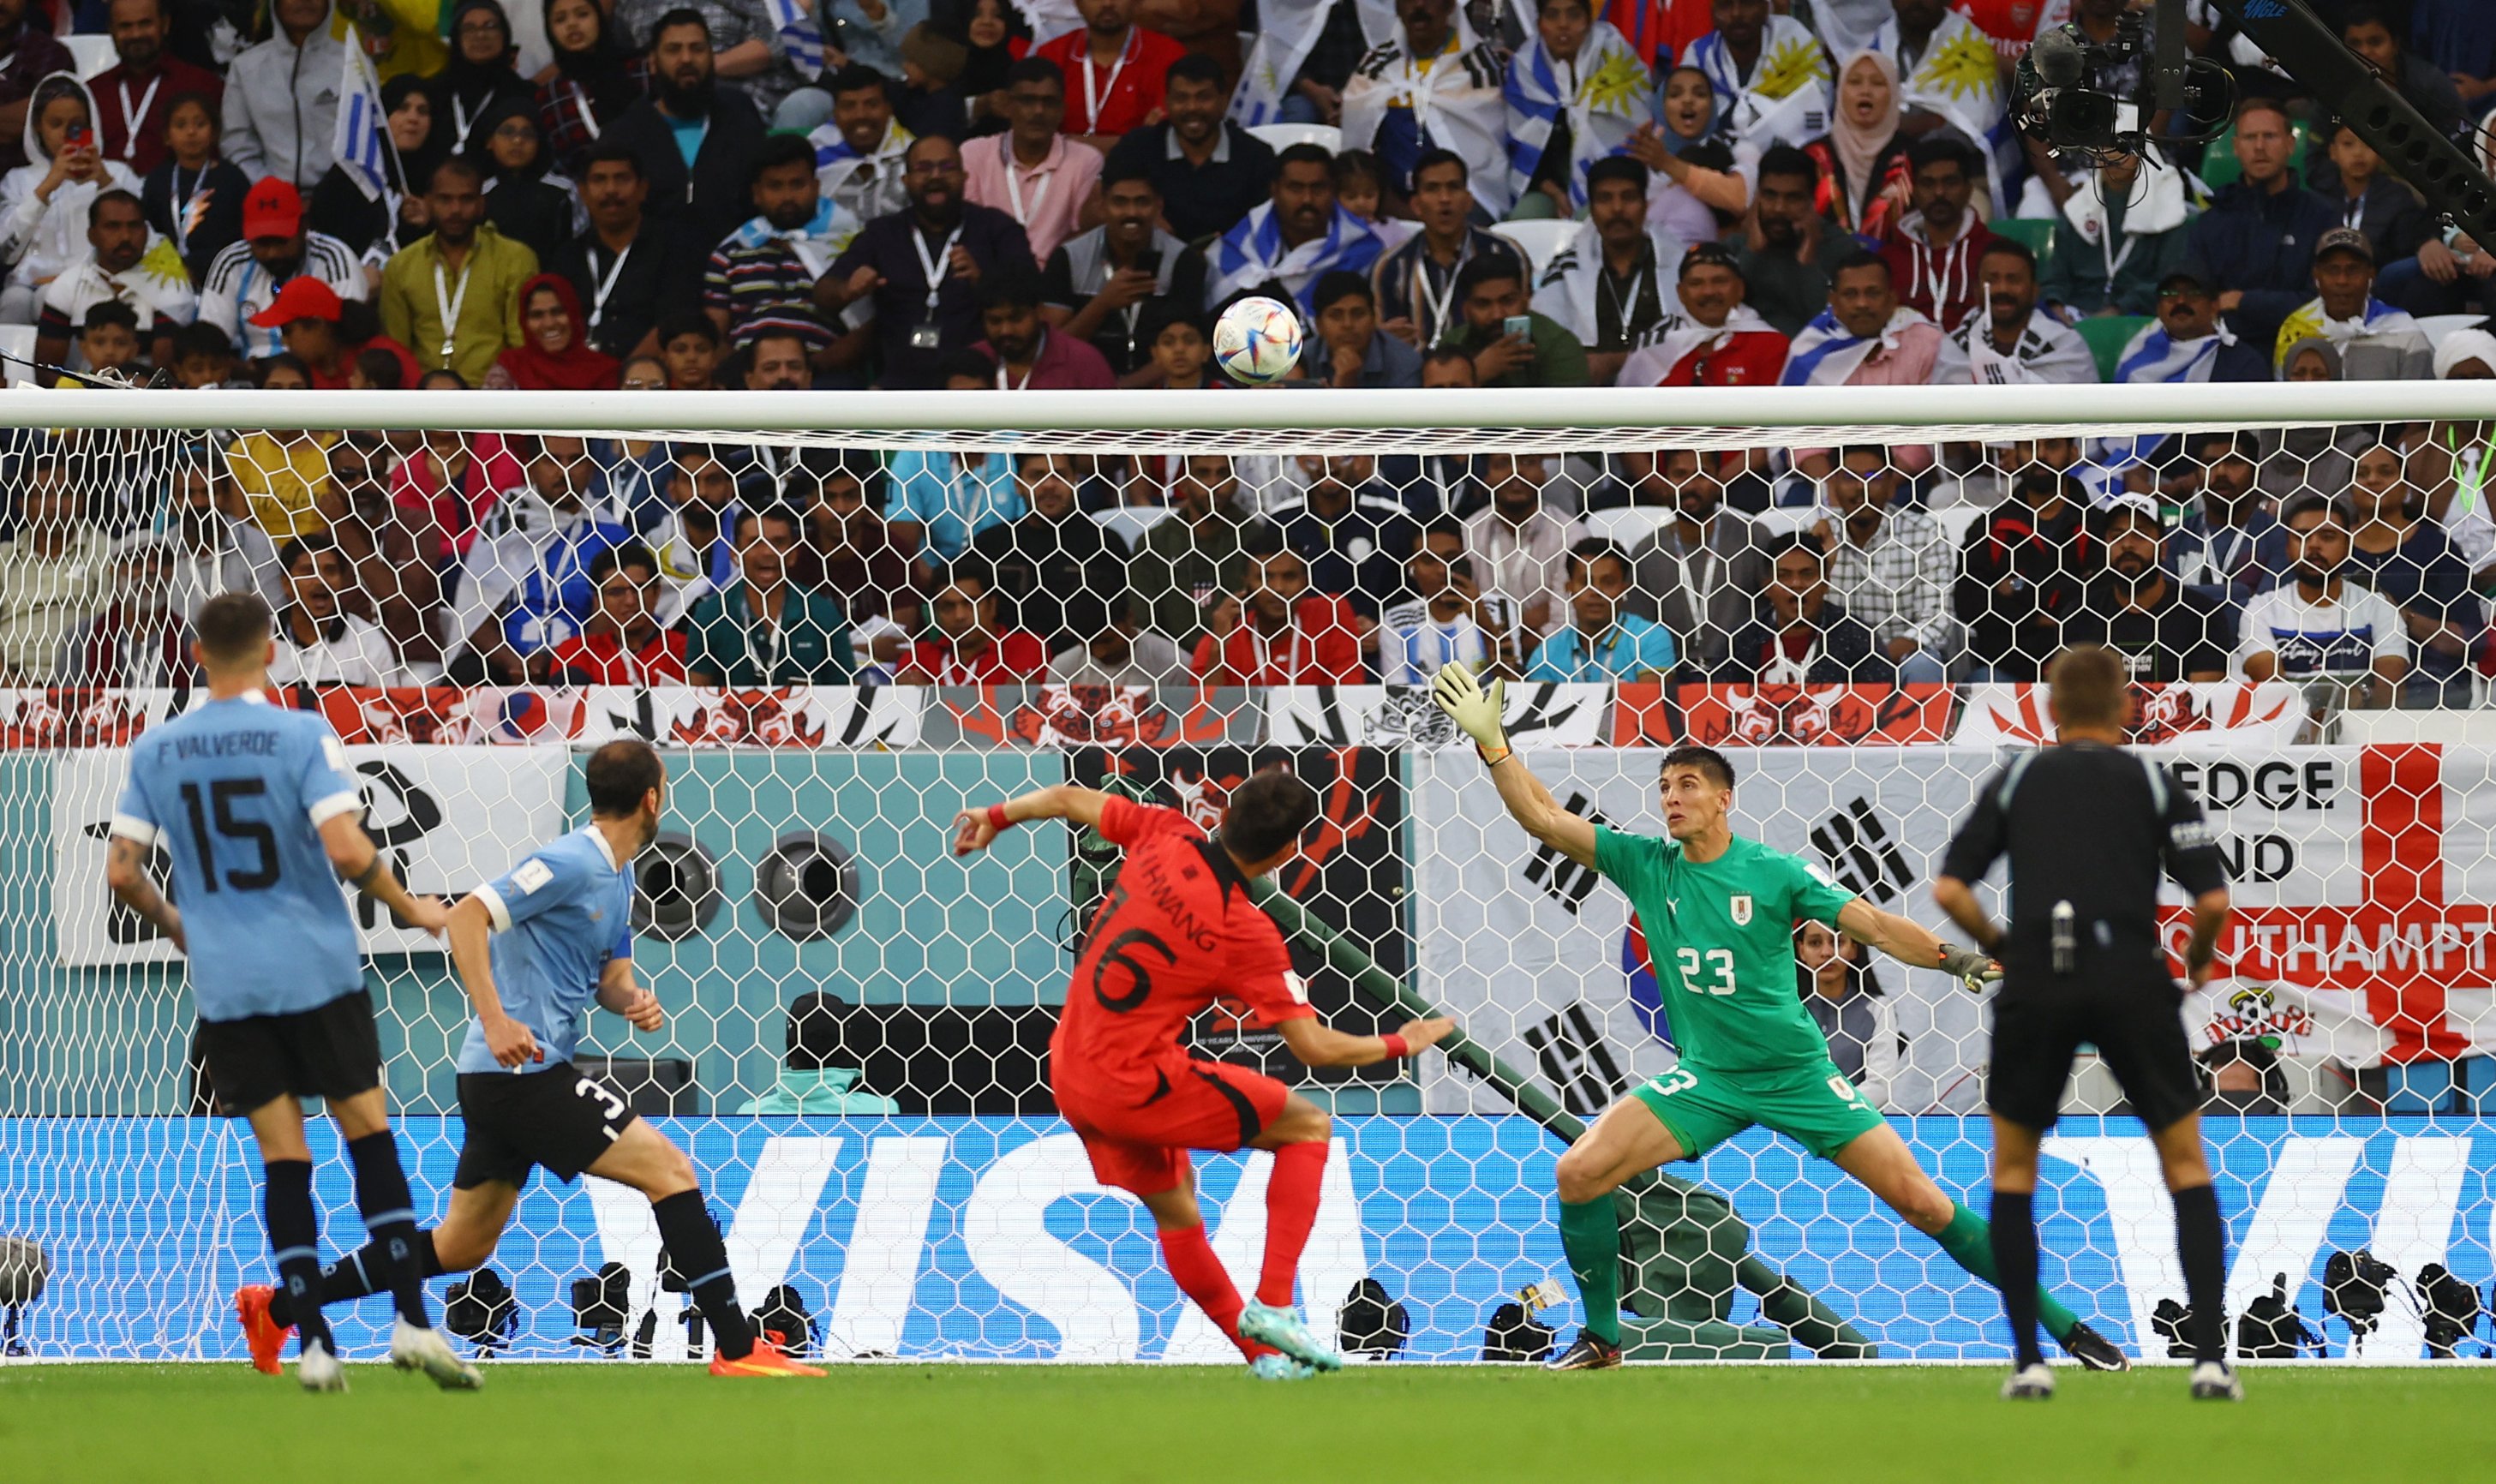 سون هيونج مين يدخل في نوبة بكاء بعد تأهل كوريا الجنوبية إلى دور الـ 16 من كأس العالم - بوابة البلد